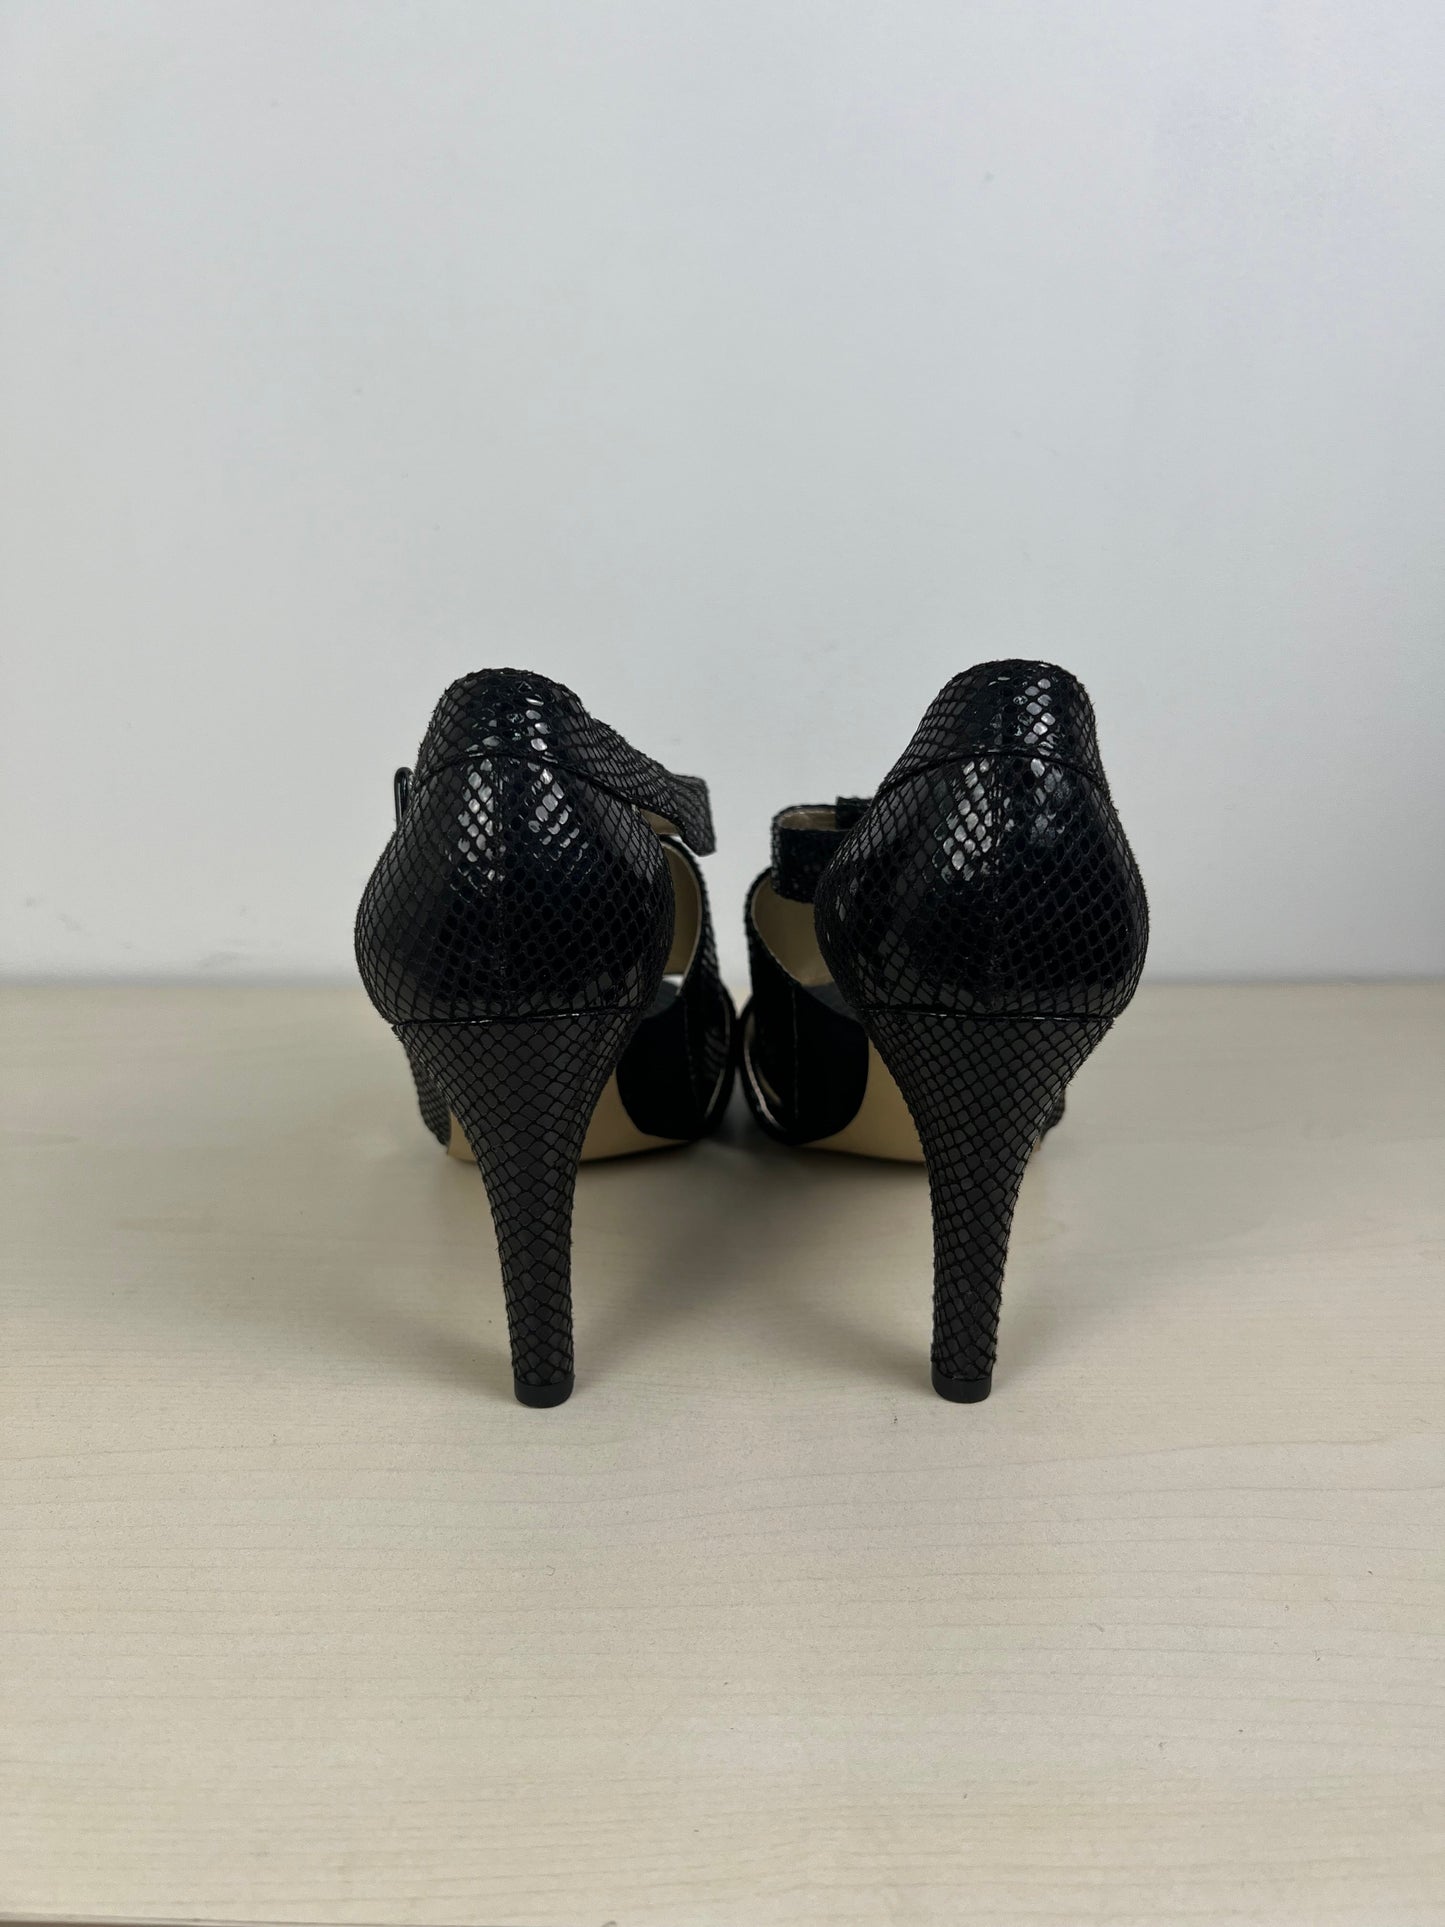 Snakeskin Print Shoes Heels Stiletto Anne Klein, Size 10